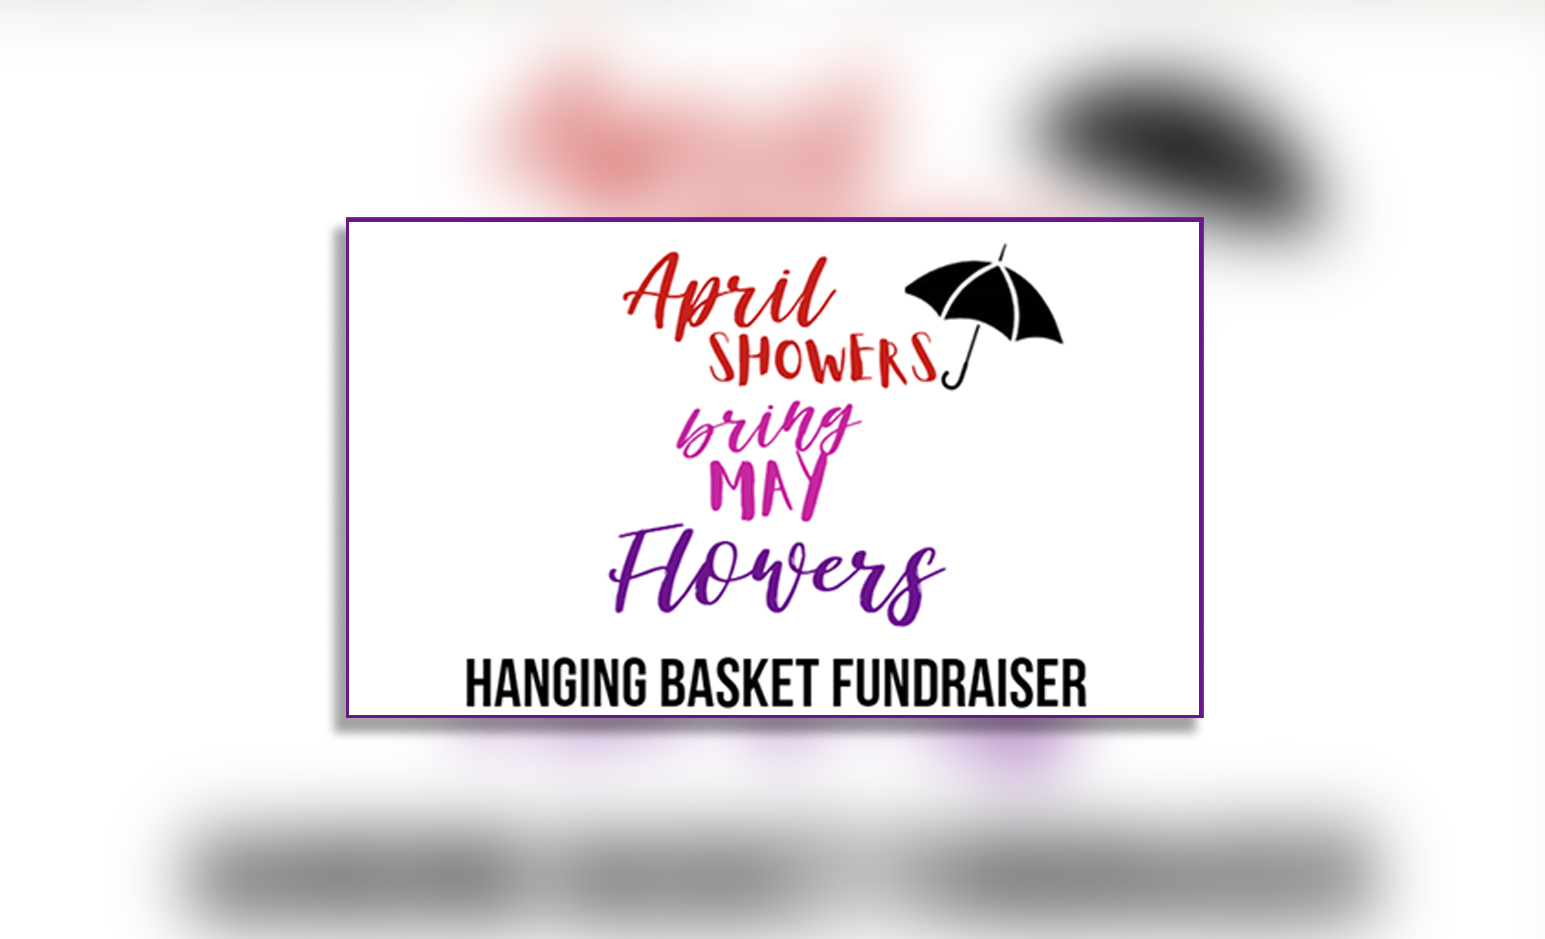 Hanging Basket Fundraiser